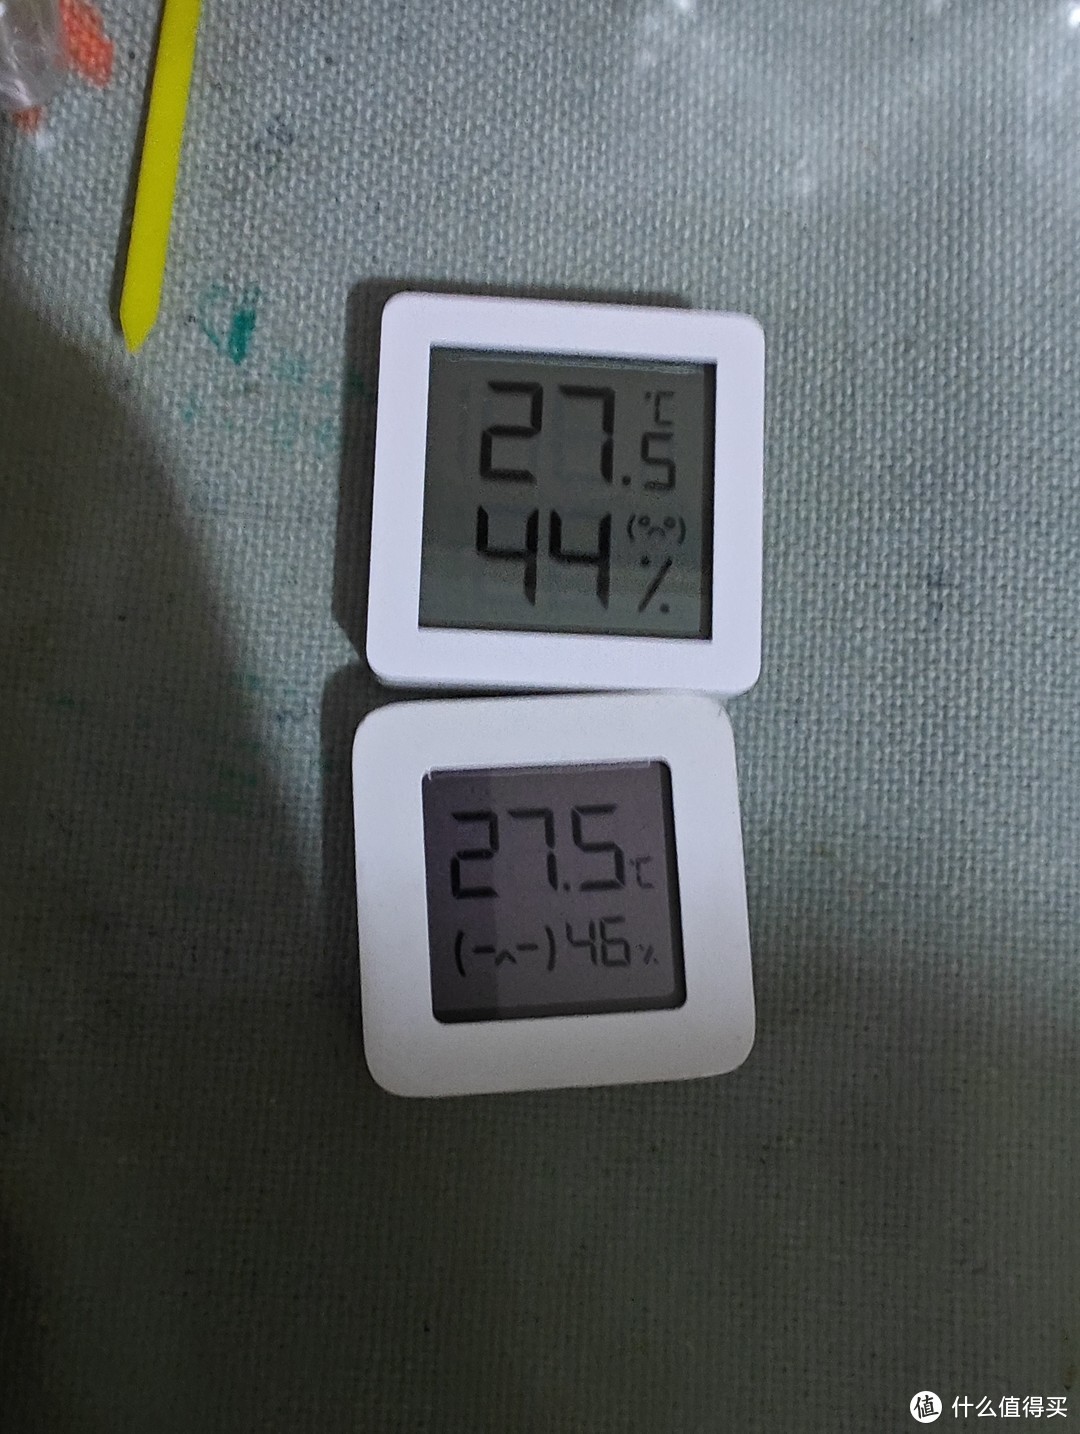 告别繁琐操作，秒秒测温湿度计让你秒懂环境变化！（附对比米家温湿度计）